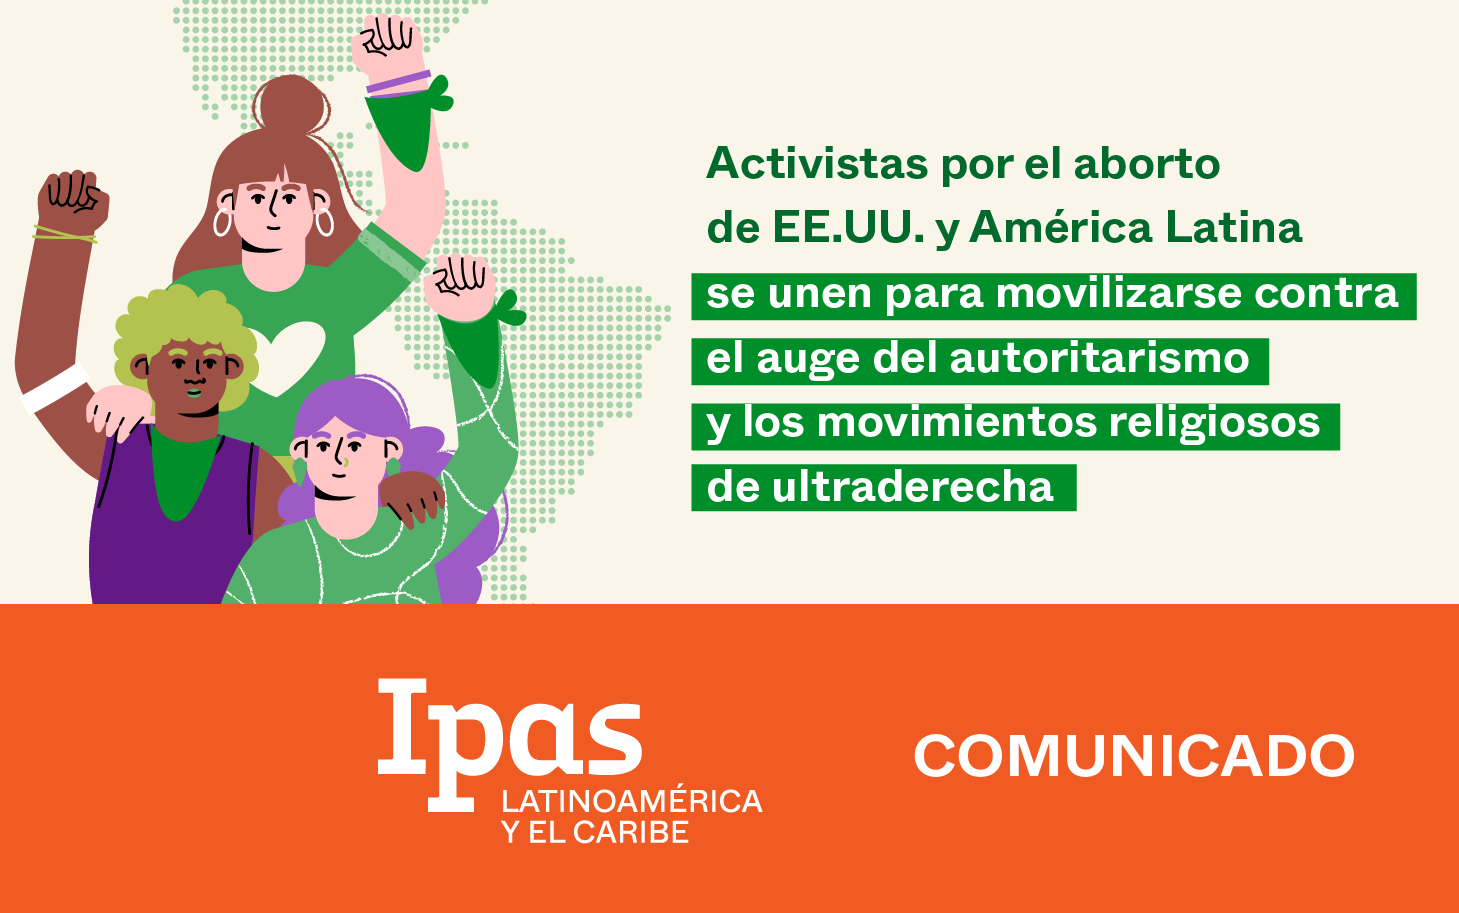 Activistas por el aborto de EE.UU. y América Latina se unen para movilizarse contra el auge del autoritarismo y los movimientos religiosos de ultraderecha